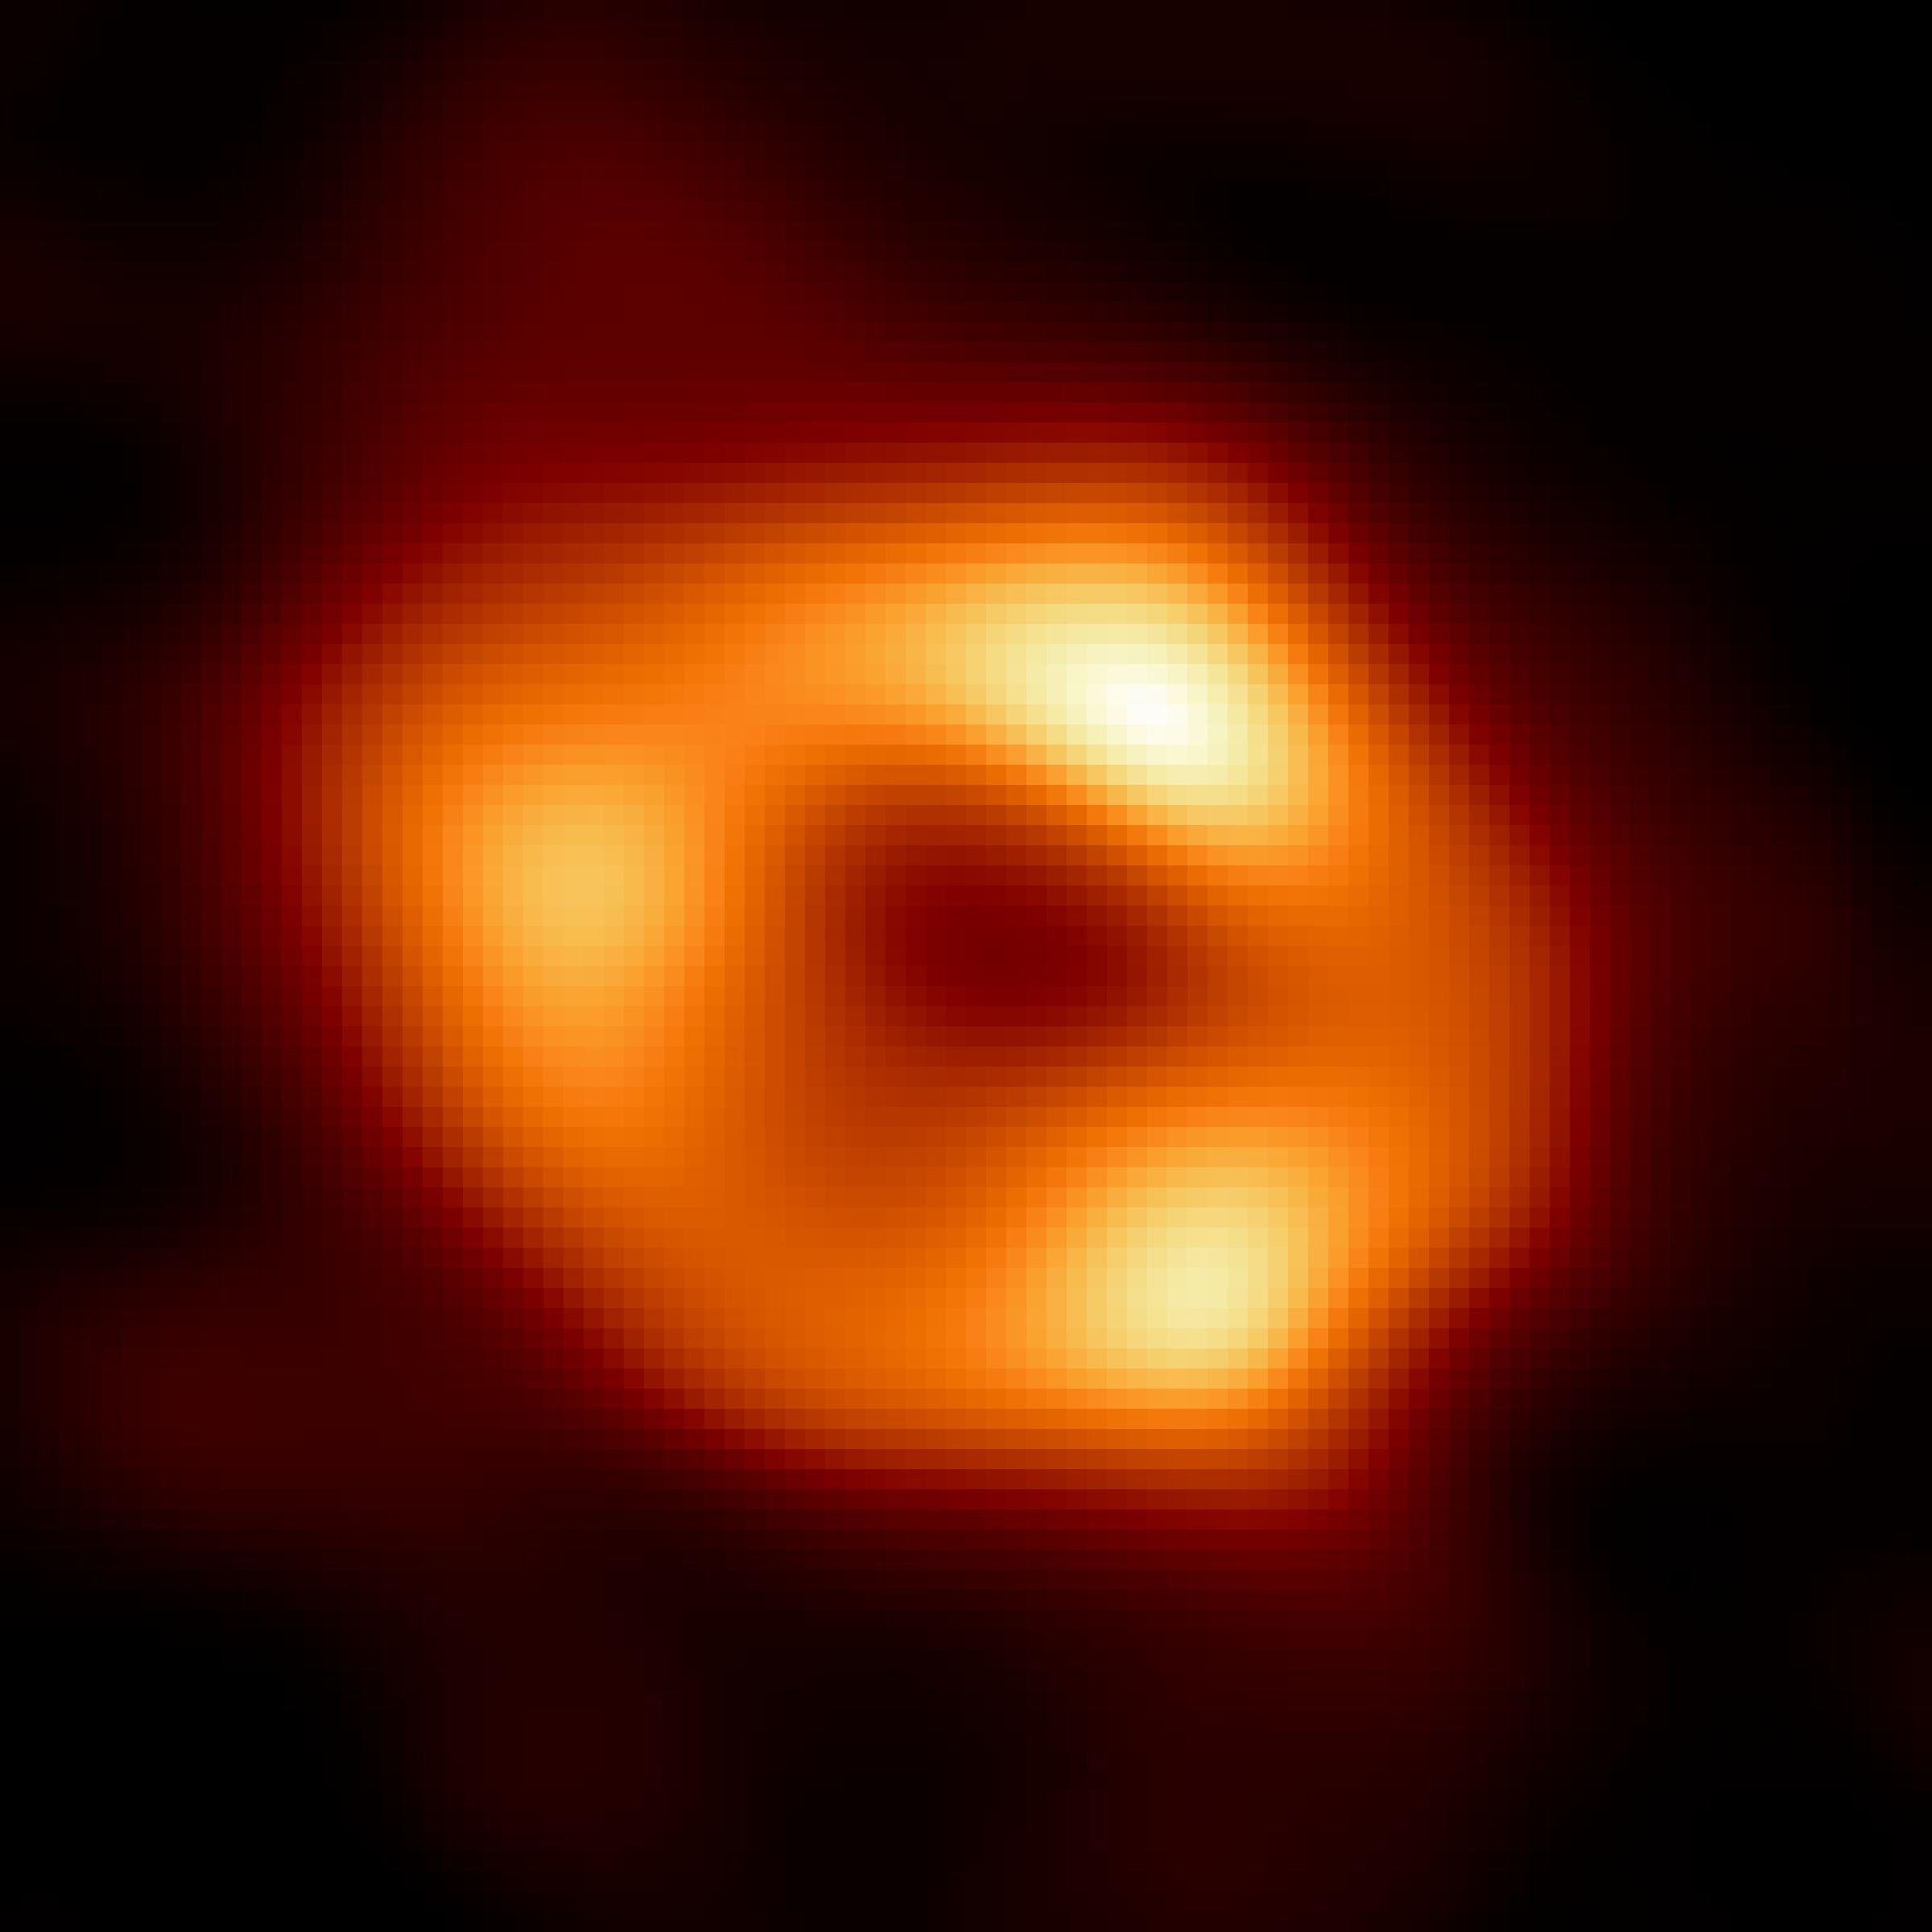 Das Bild zeigt einen orangefarbenen Ring mit asymmetrischen Verdickungen vor schwarzem Hintergrund.